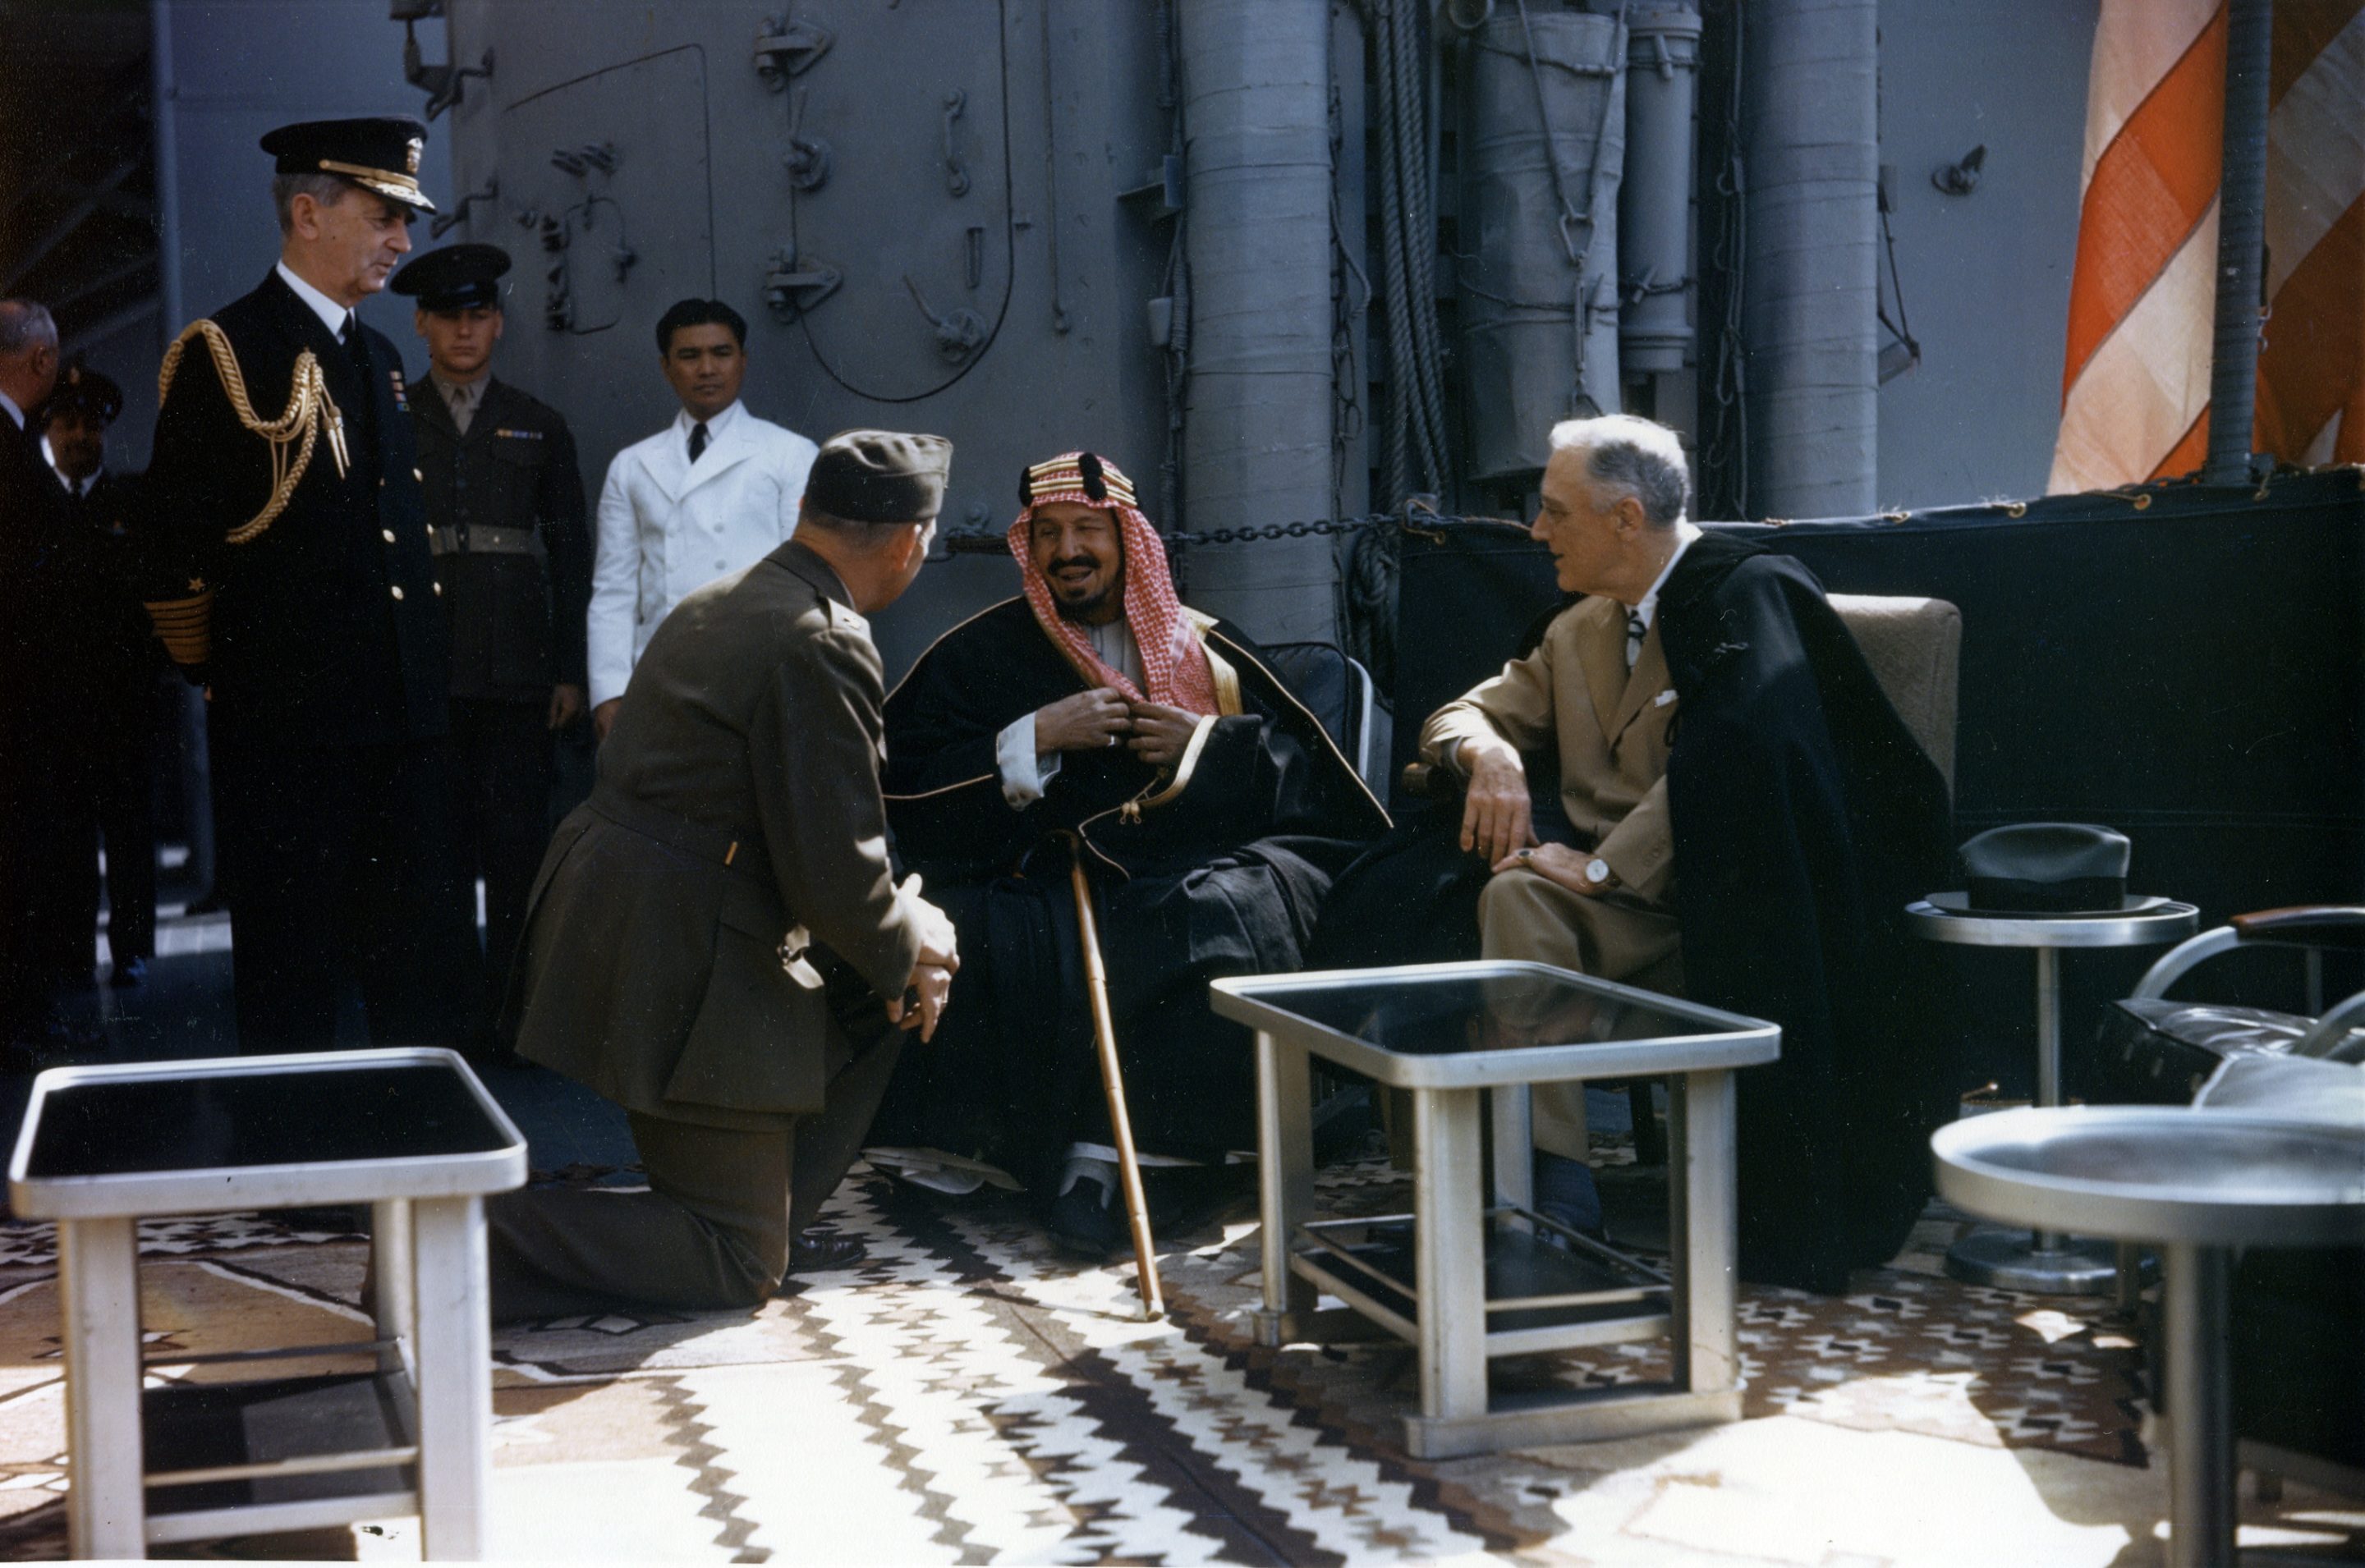 Le président Franklin Roosevelt en compagnie du roi Abdelaziz Al Saoud, du colonel William A. Eddy (en) (qui sert d'interprète, un genou au sol) et de l'amiral William Leahy (debout, à gauche) sur l'USS Quincy.